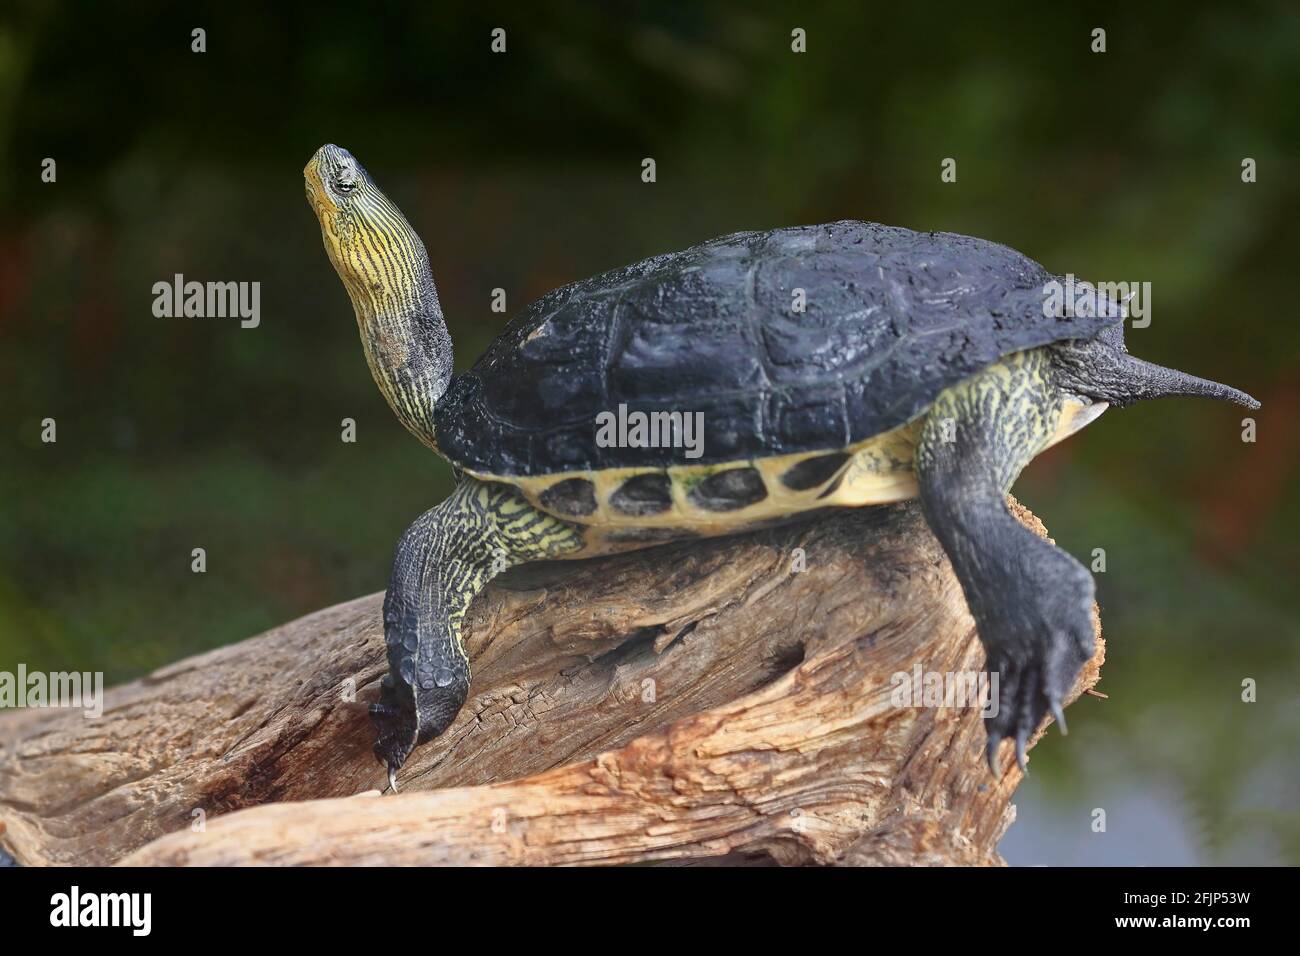 Chinese stripe-necked turtle (Ocadia sinensis), adult, resting, captive, China Stock Photo